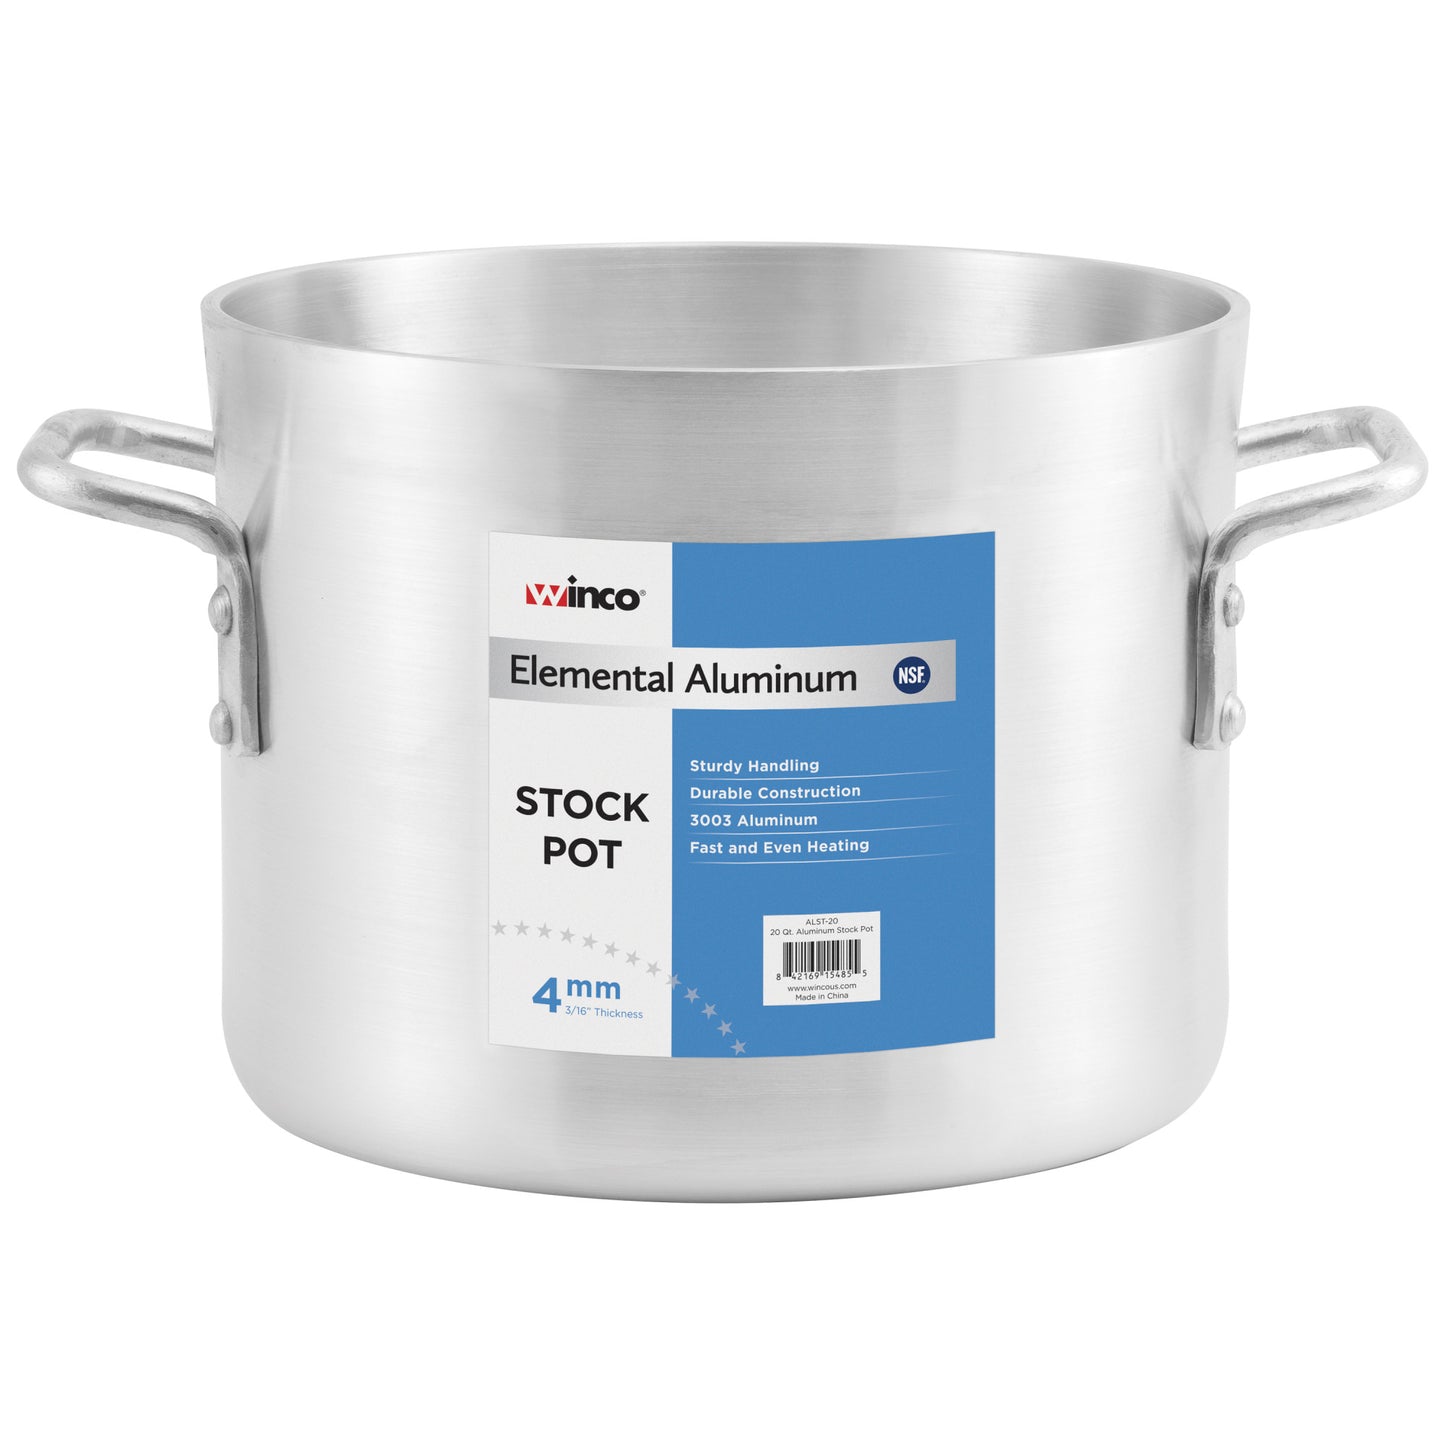 ALST-16 - Elemental 4mm Aluminum Stock Pot - 16 Quart